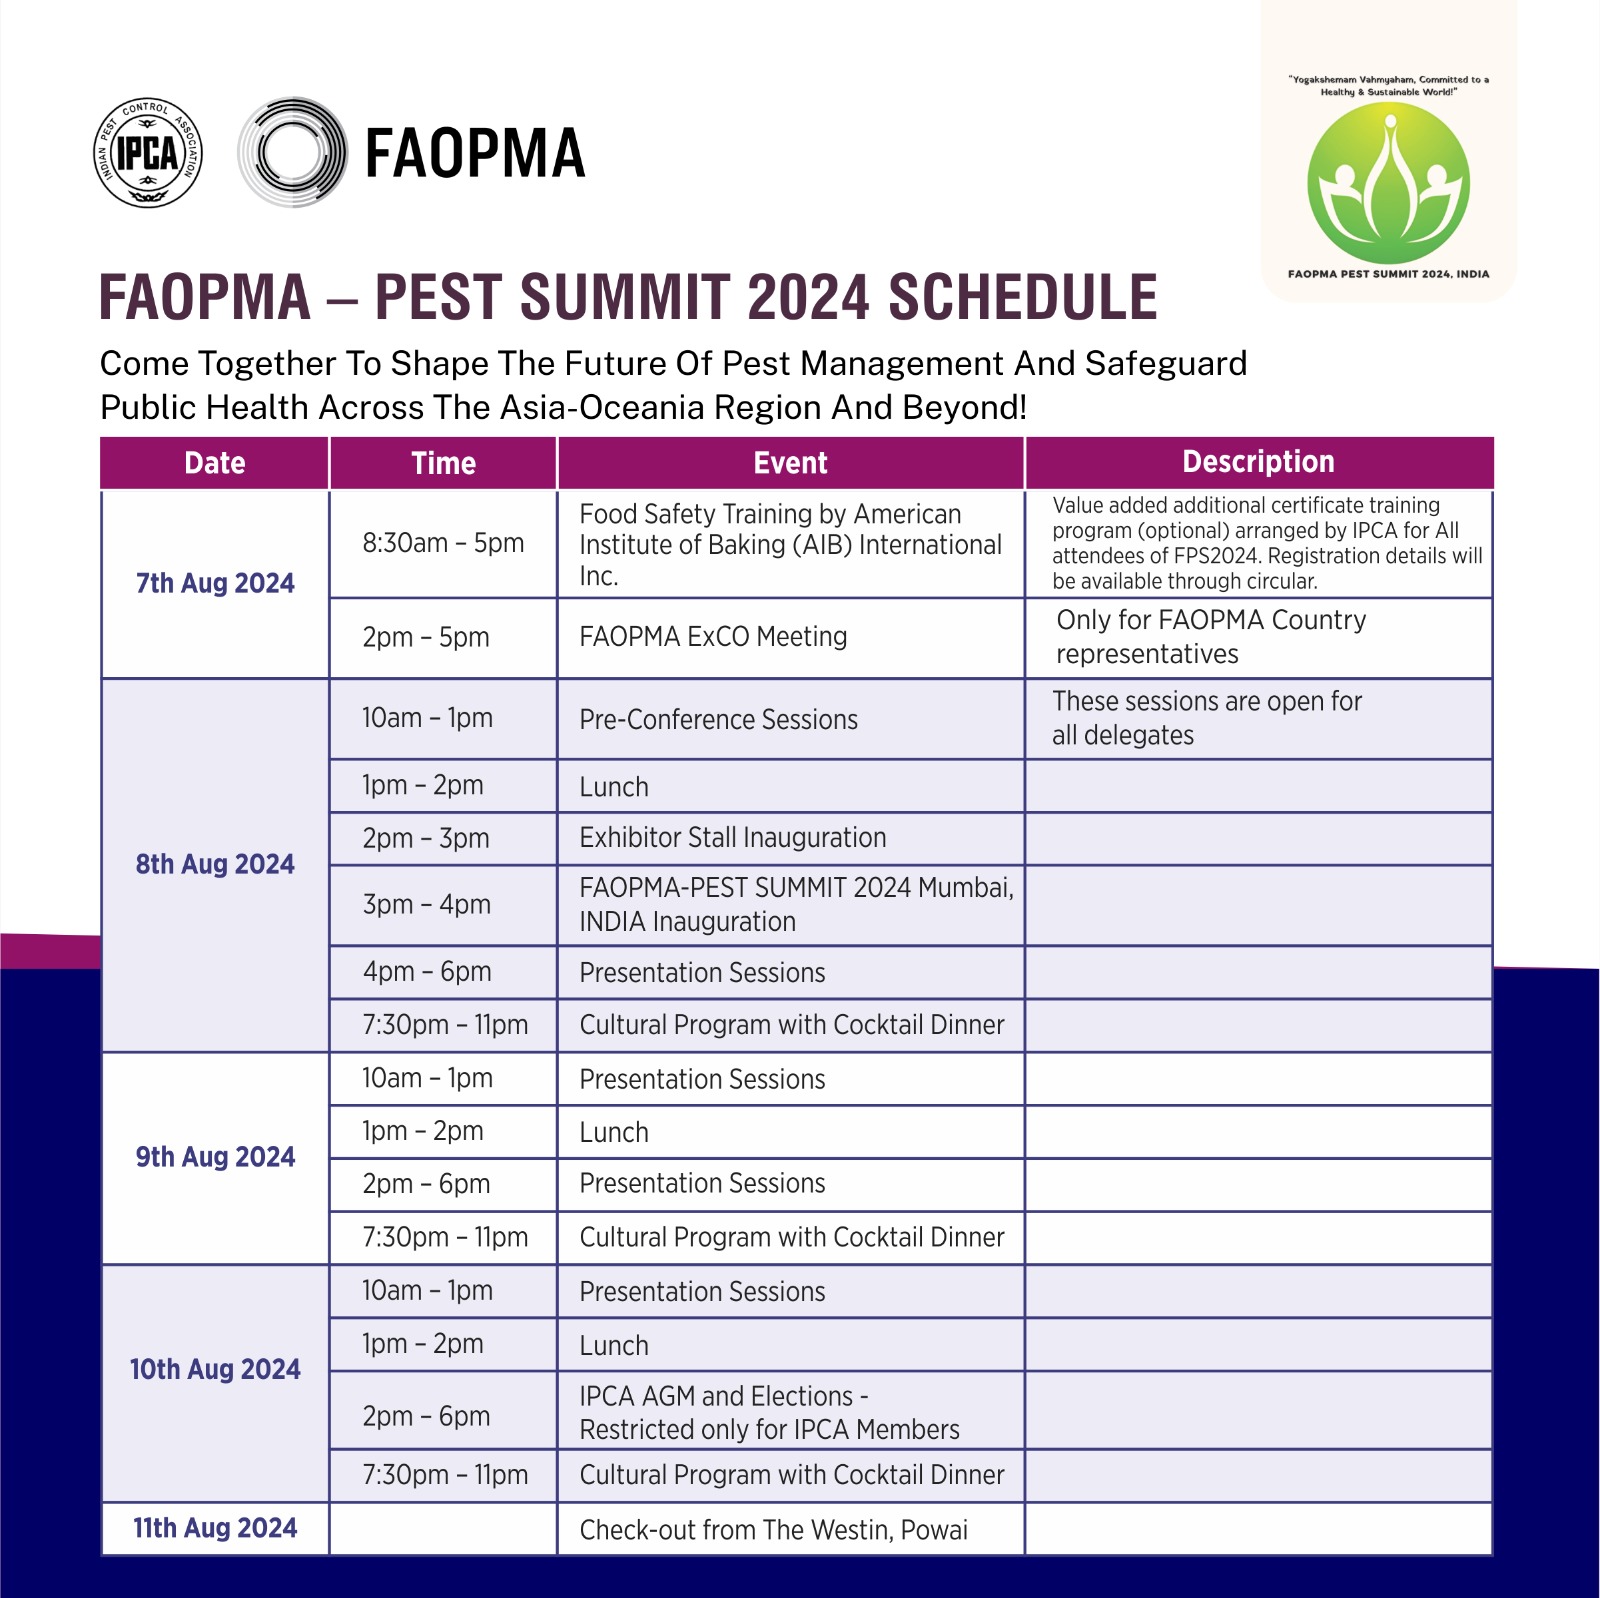 게시판 본문의 첨부파일 이미지입니다. : FAOPMA pest summit 2024 schedule.jpg